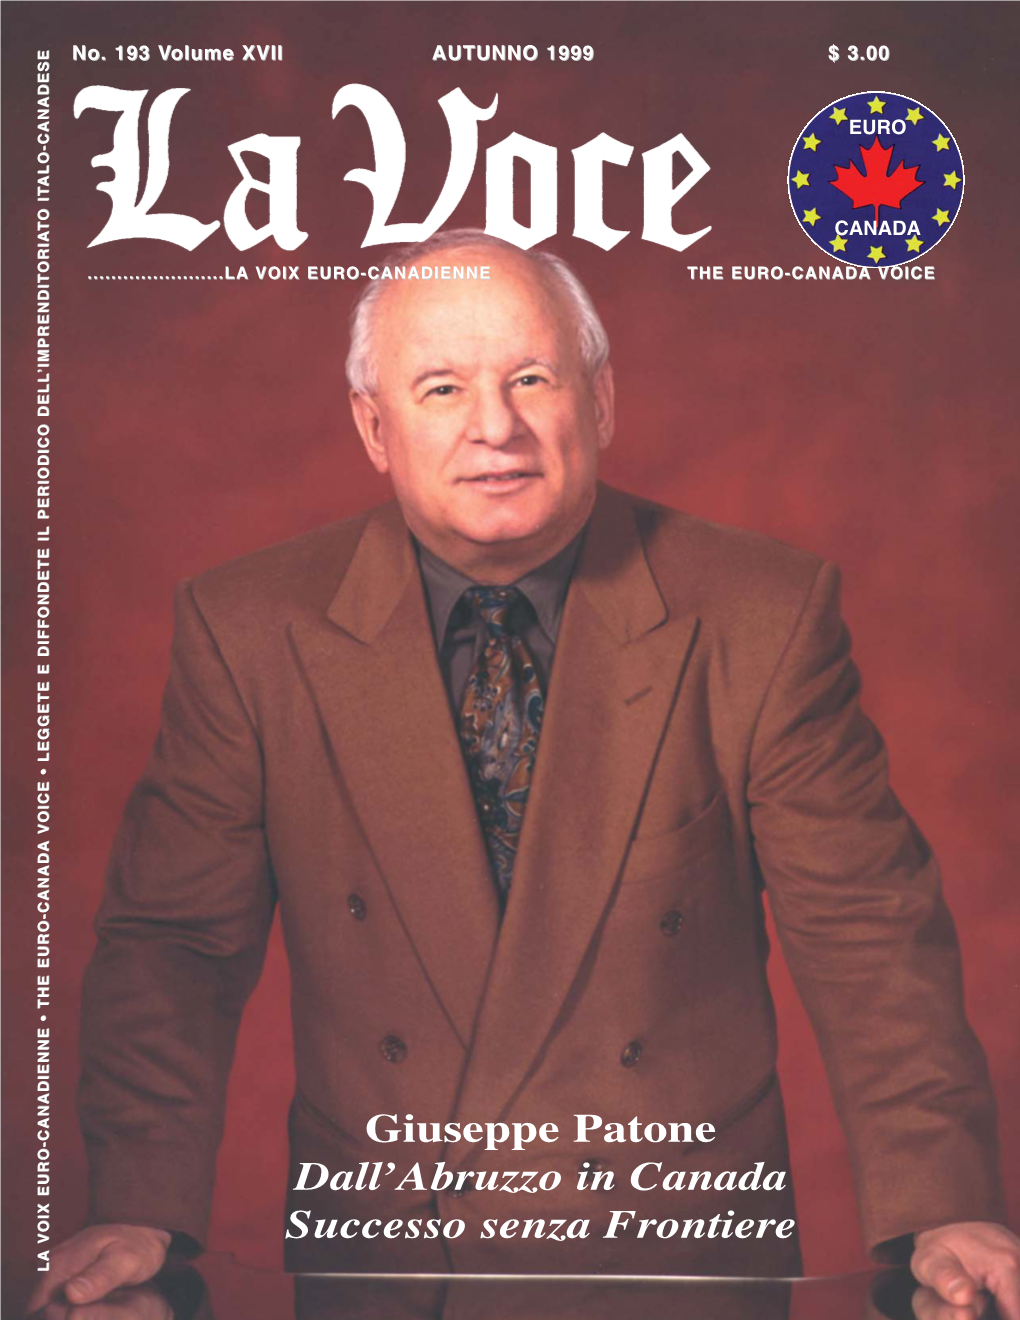 Giuseppe Patone Dall'abruzzo in Canada Successo Senza Frontiere